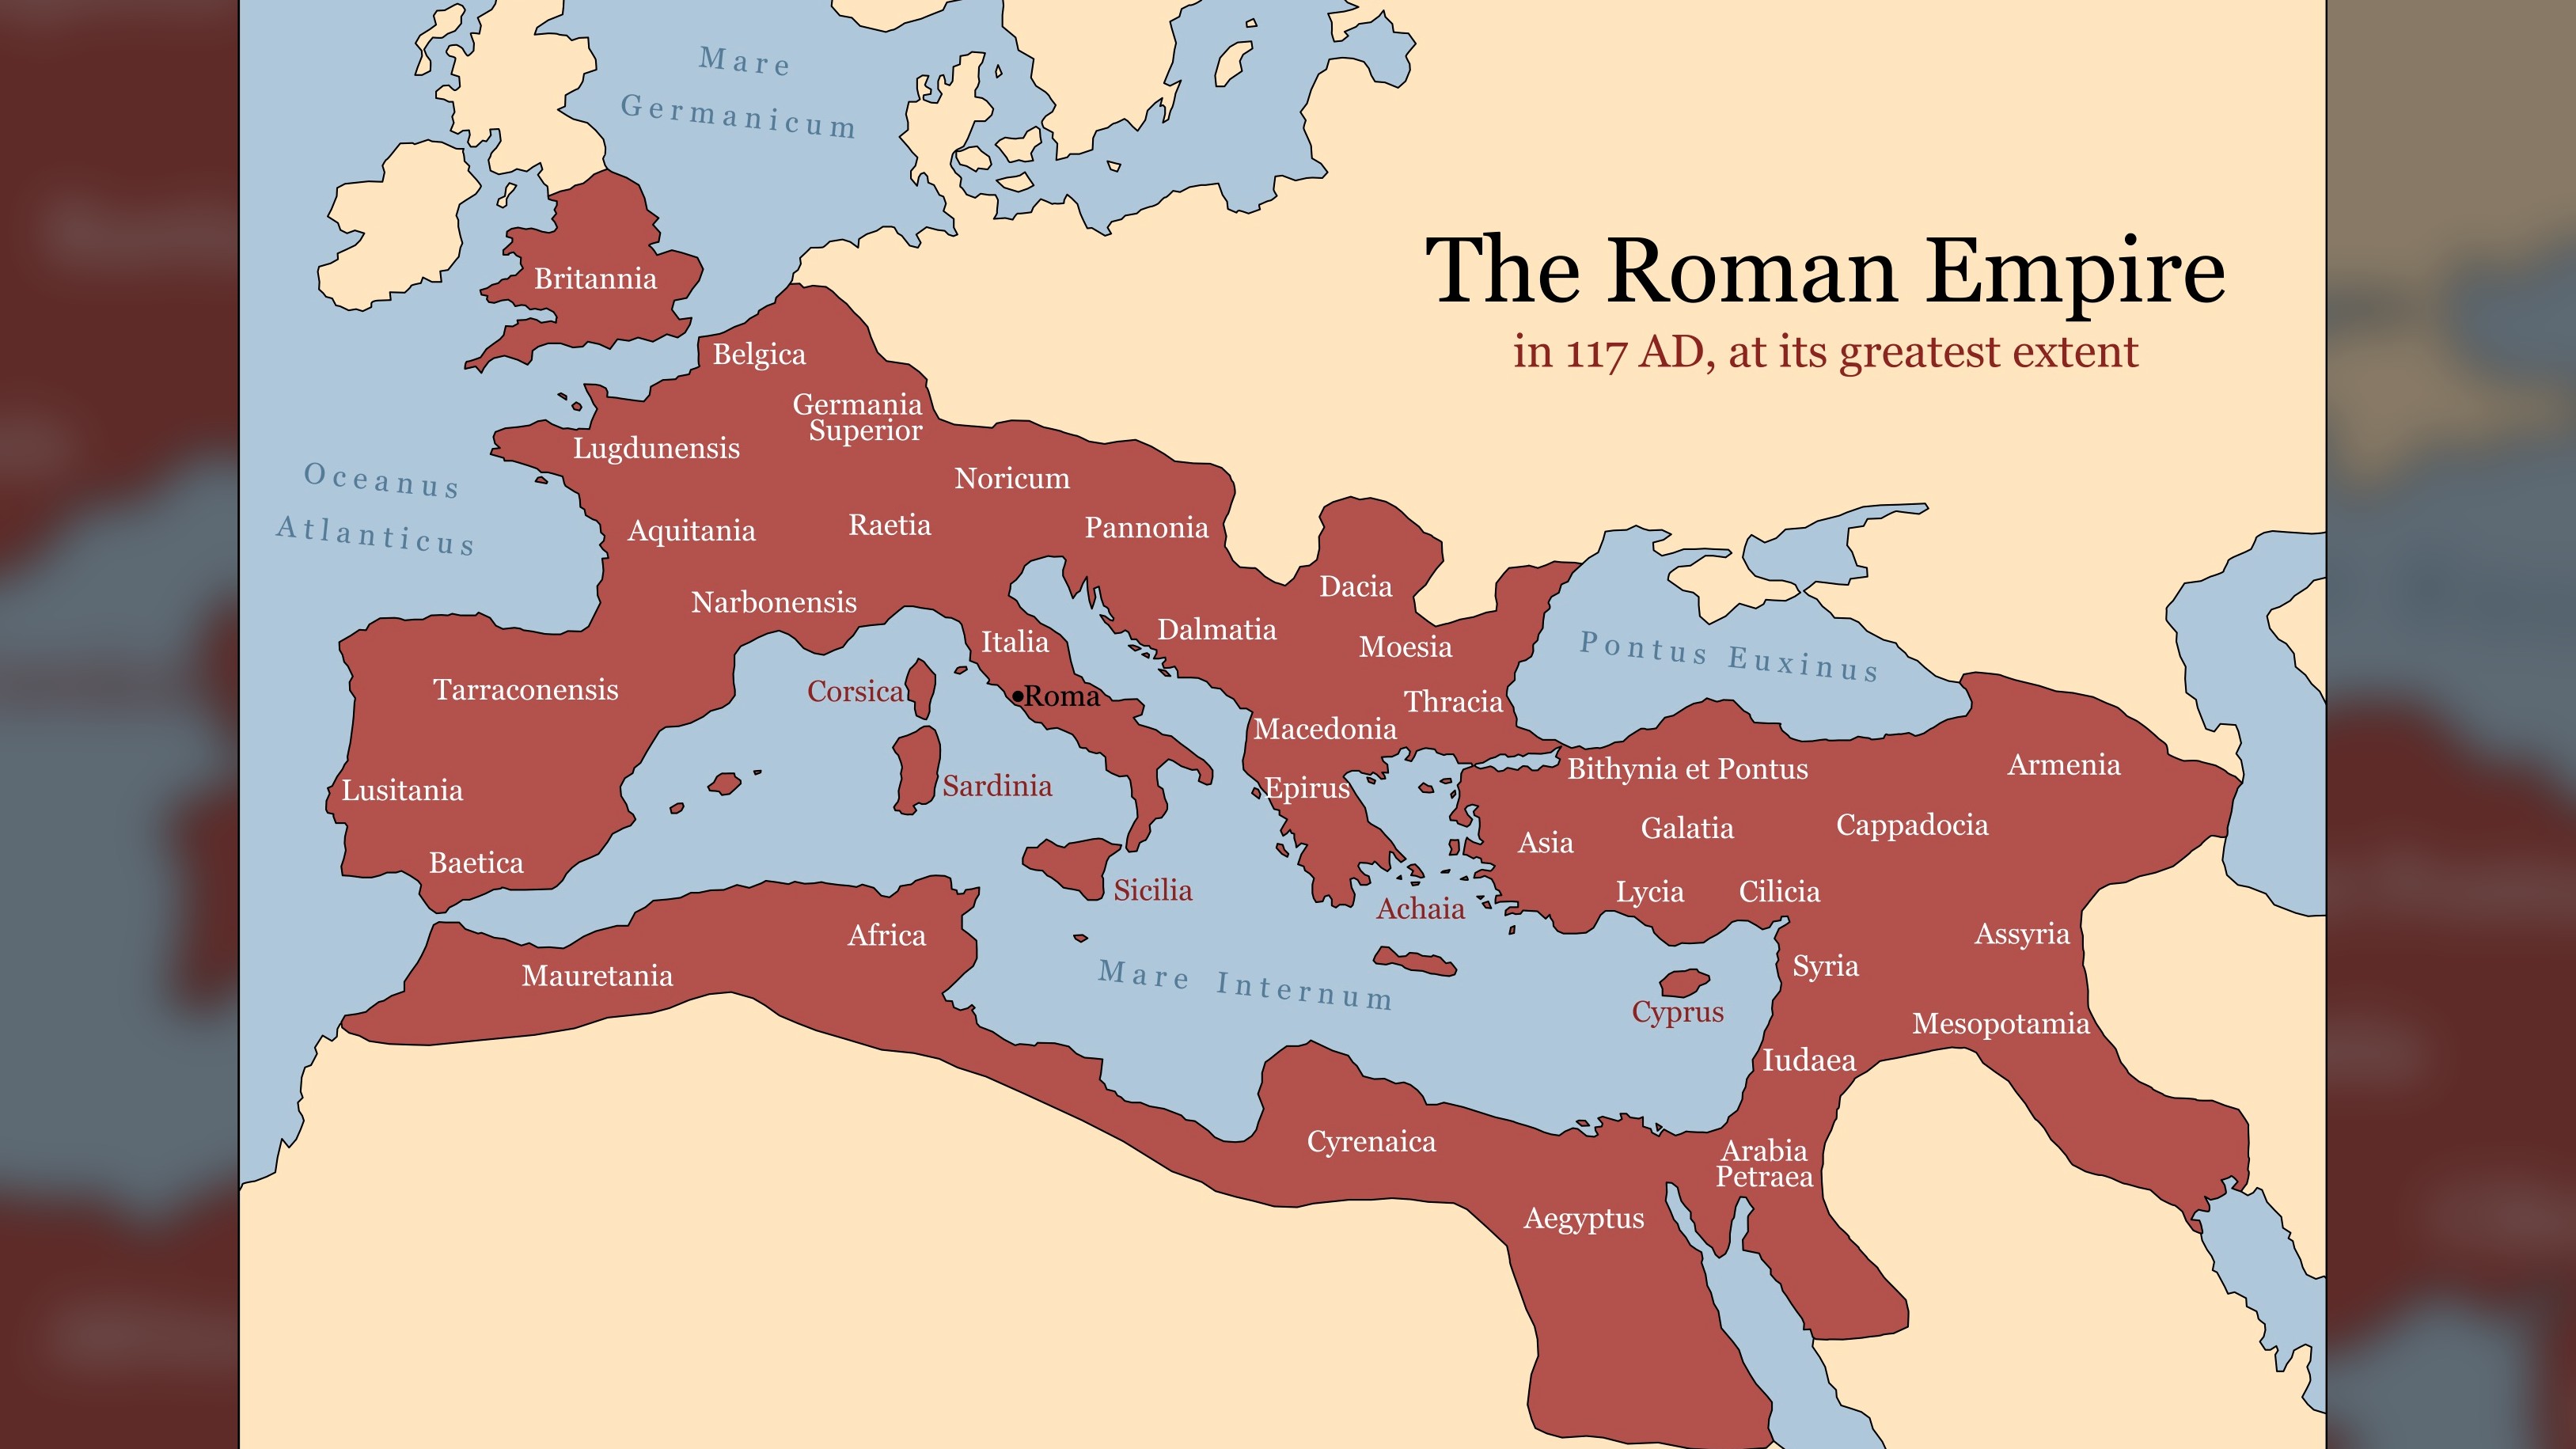 Al suo apice, le strade dell'Impero Romano attraversavano i continenti per collegare importanti città e paesi alla sua capitale.